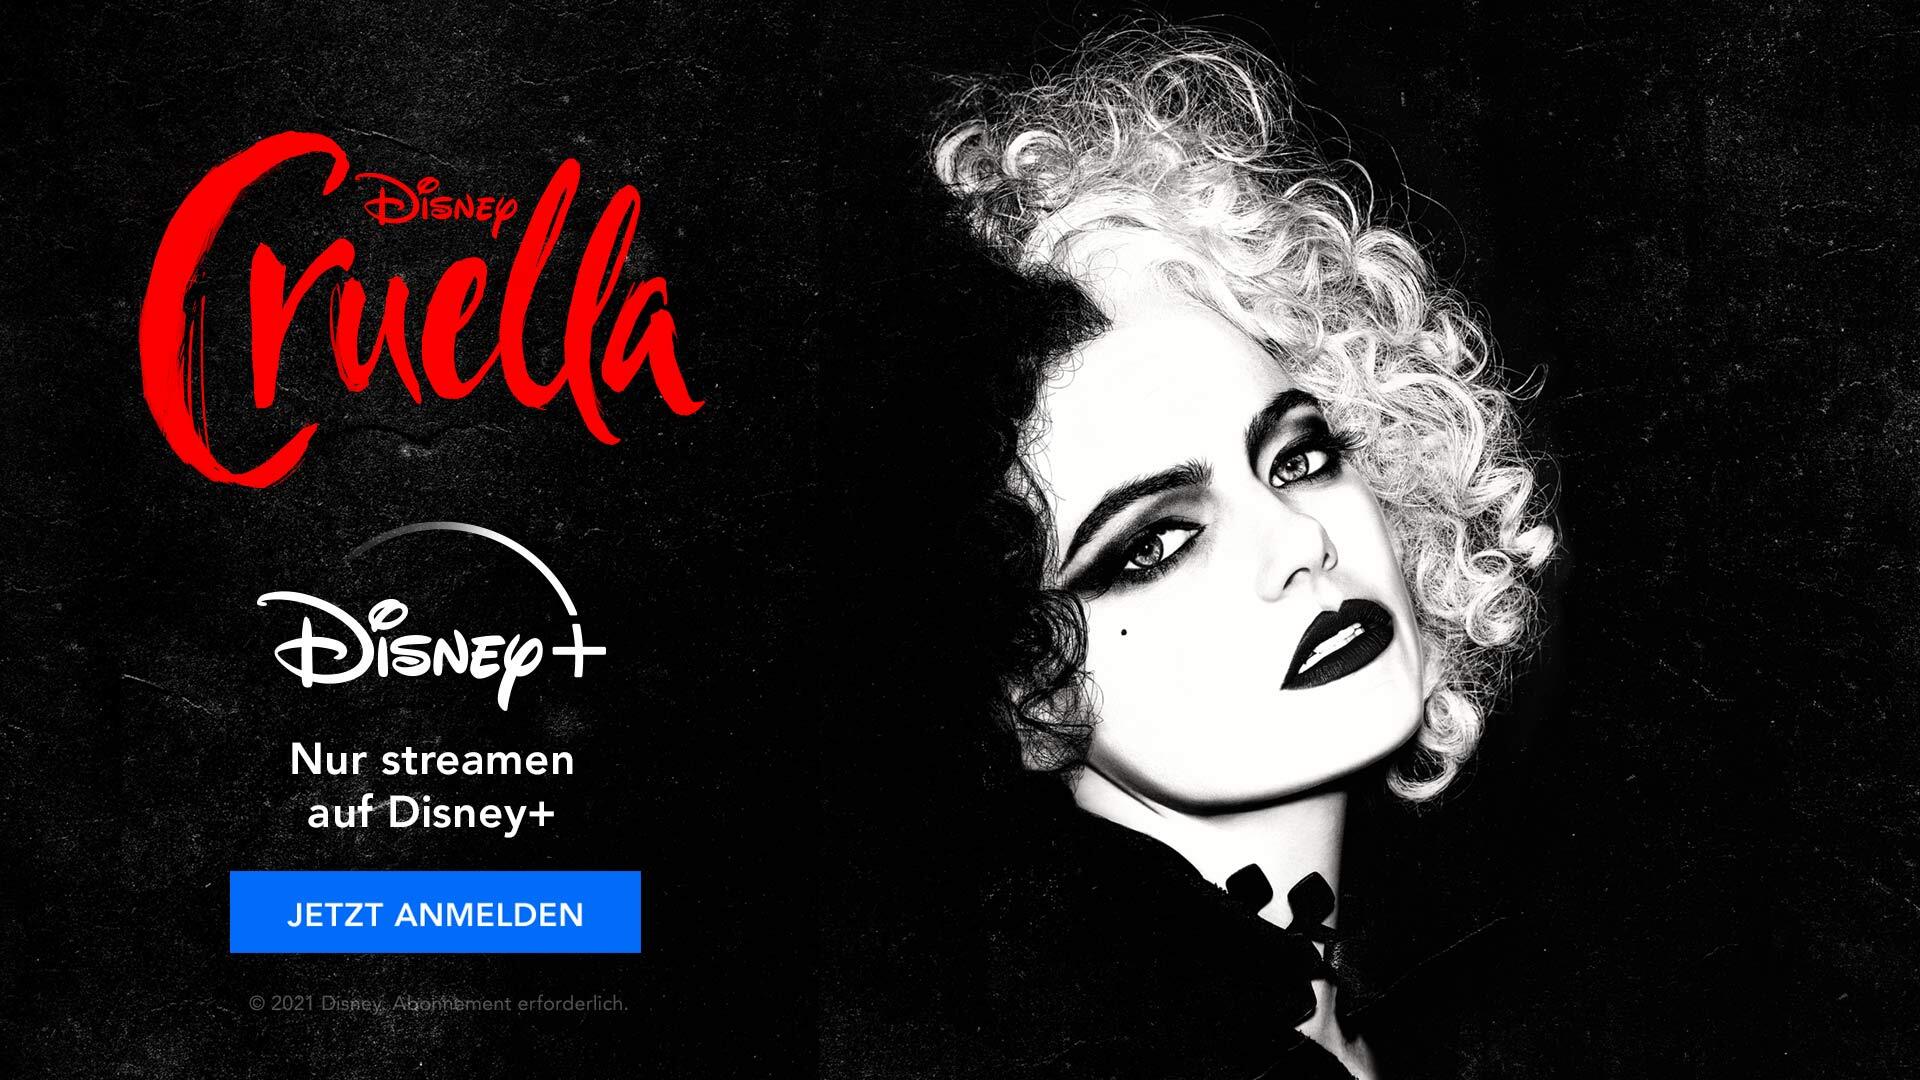 Disney Plus Cruella